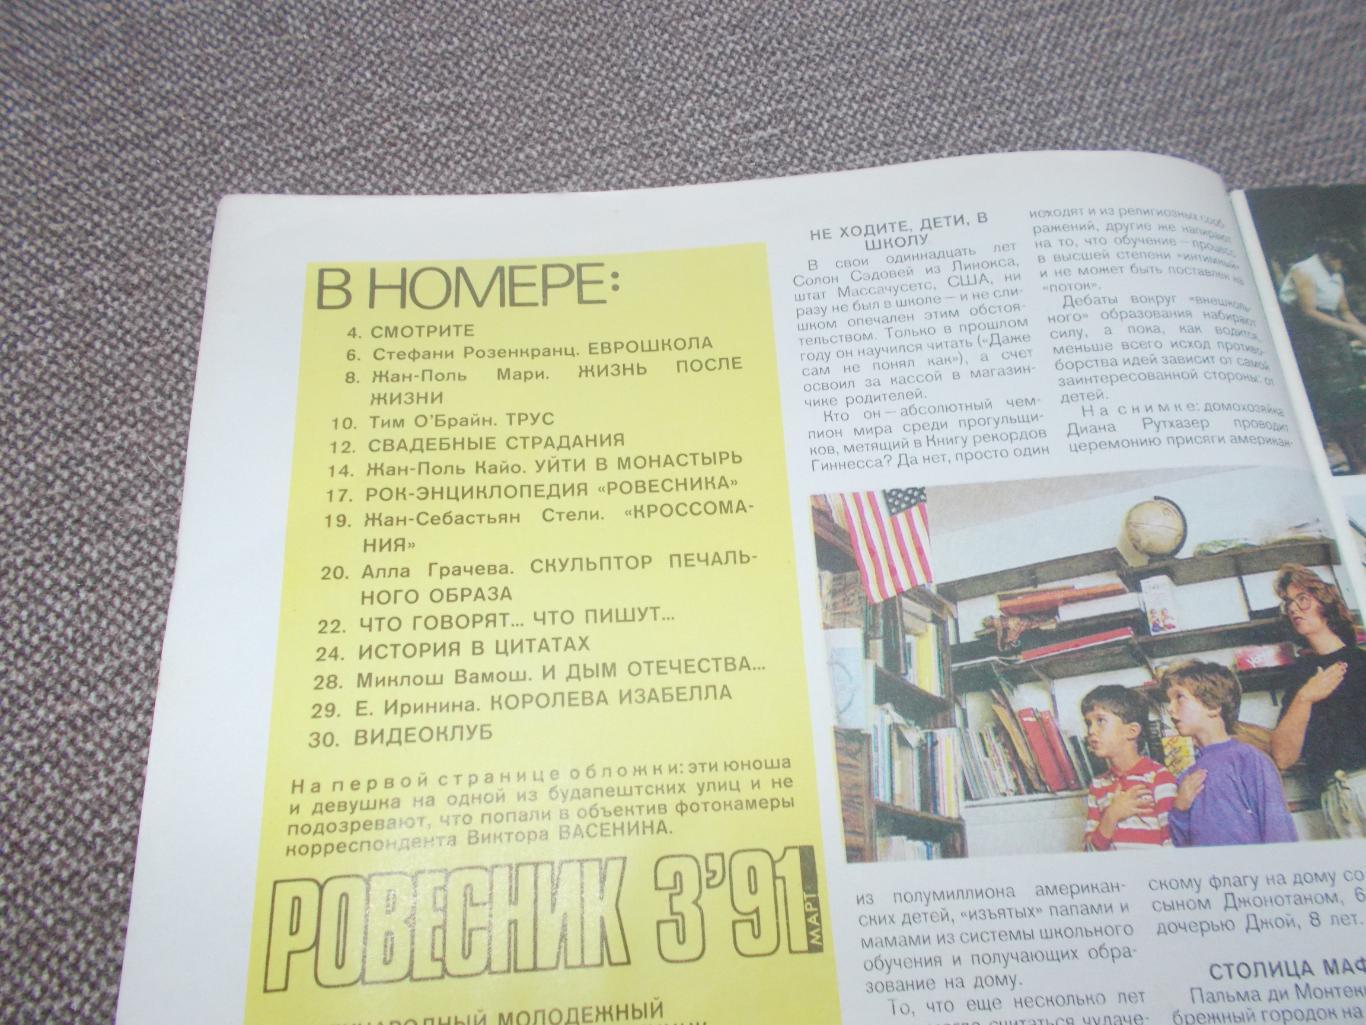 Журнал СССР :Ровесник№ 3 (март) 1991 г. (Молодежный музыкальный журнал) 2